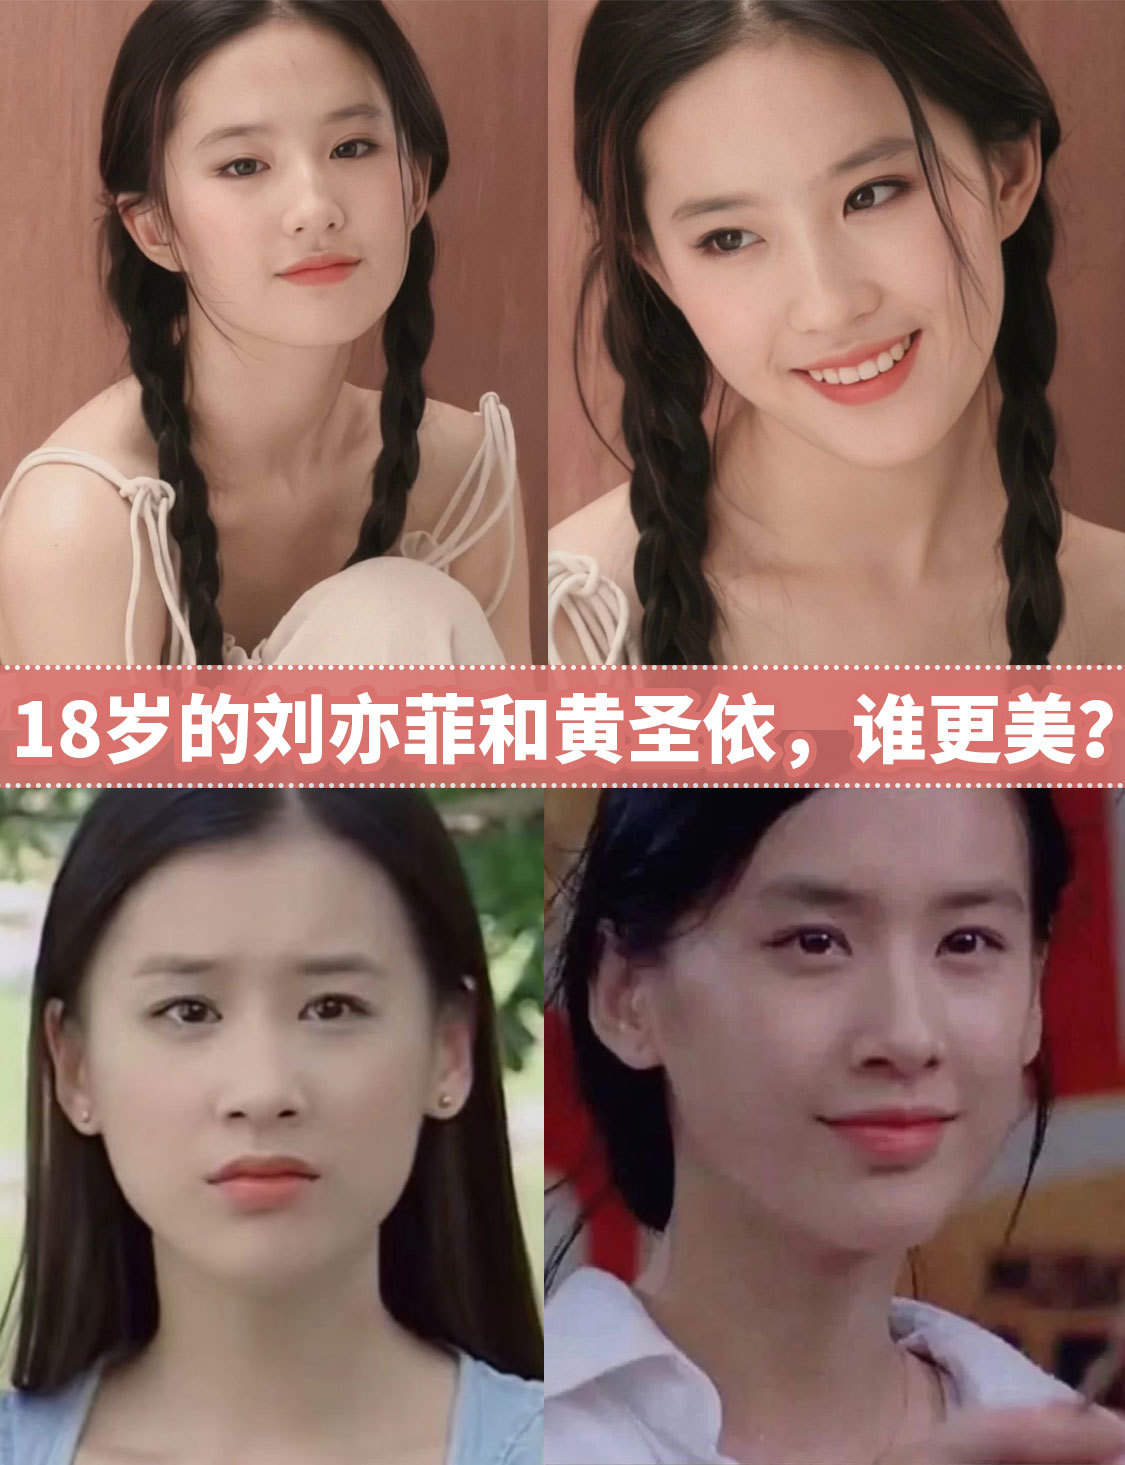 18岁的刘亦菲和黄圣依,谁更美?